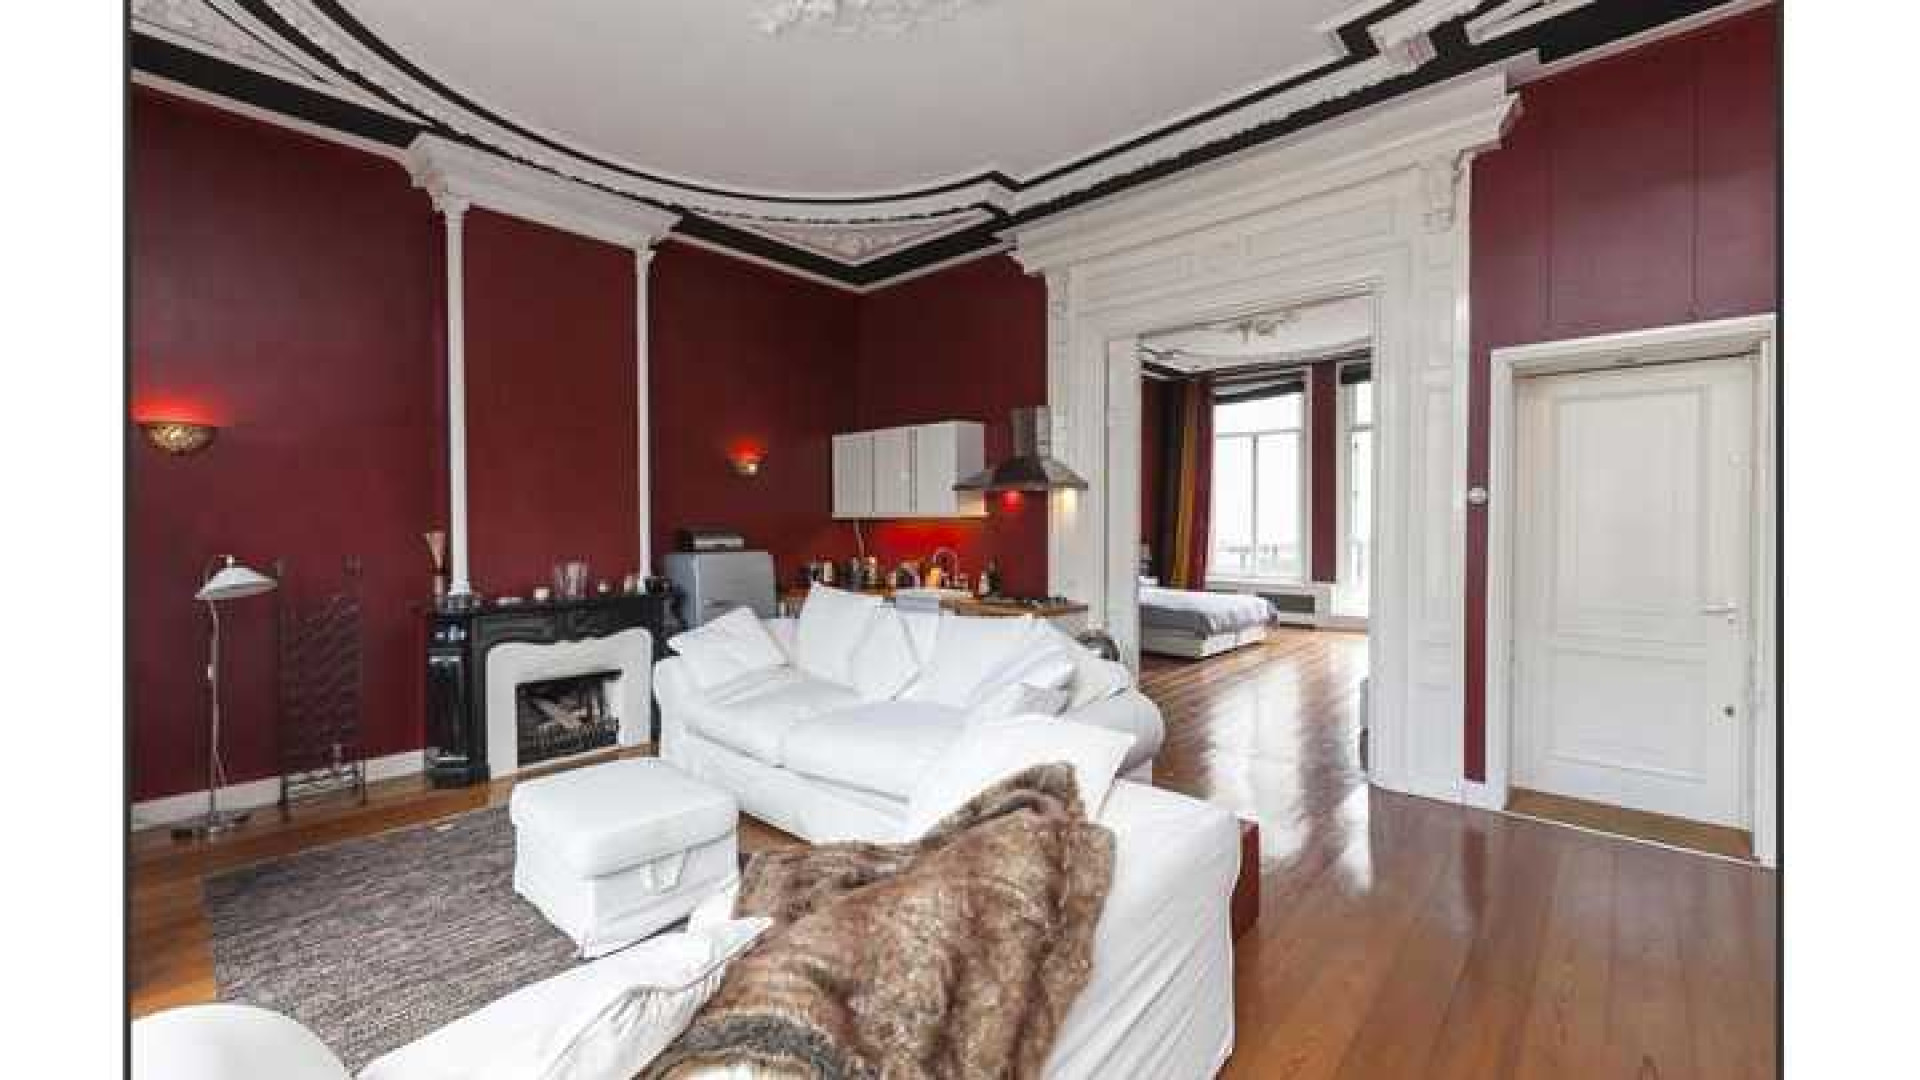 Trijnte Oosterhuis en haar ex zetten hun luxe Amsterdamse appartement te koop. Zie foto's 3